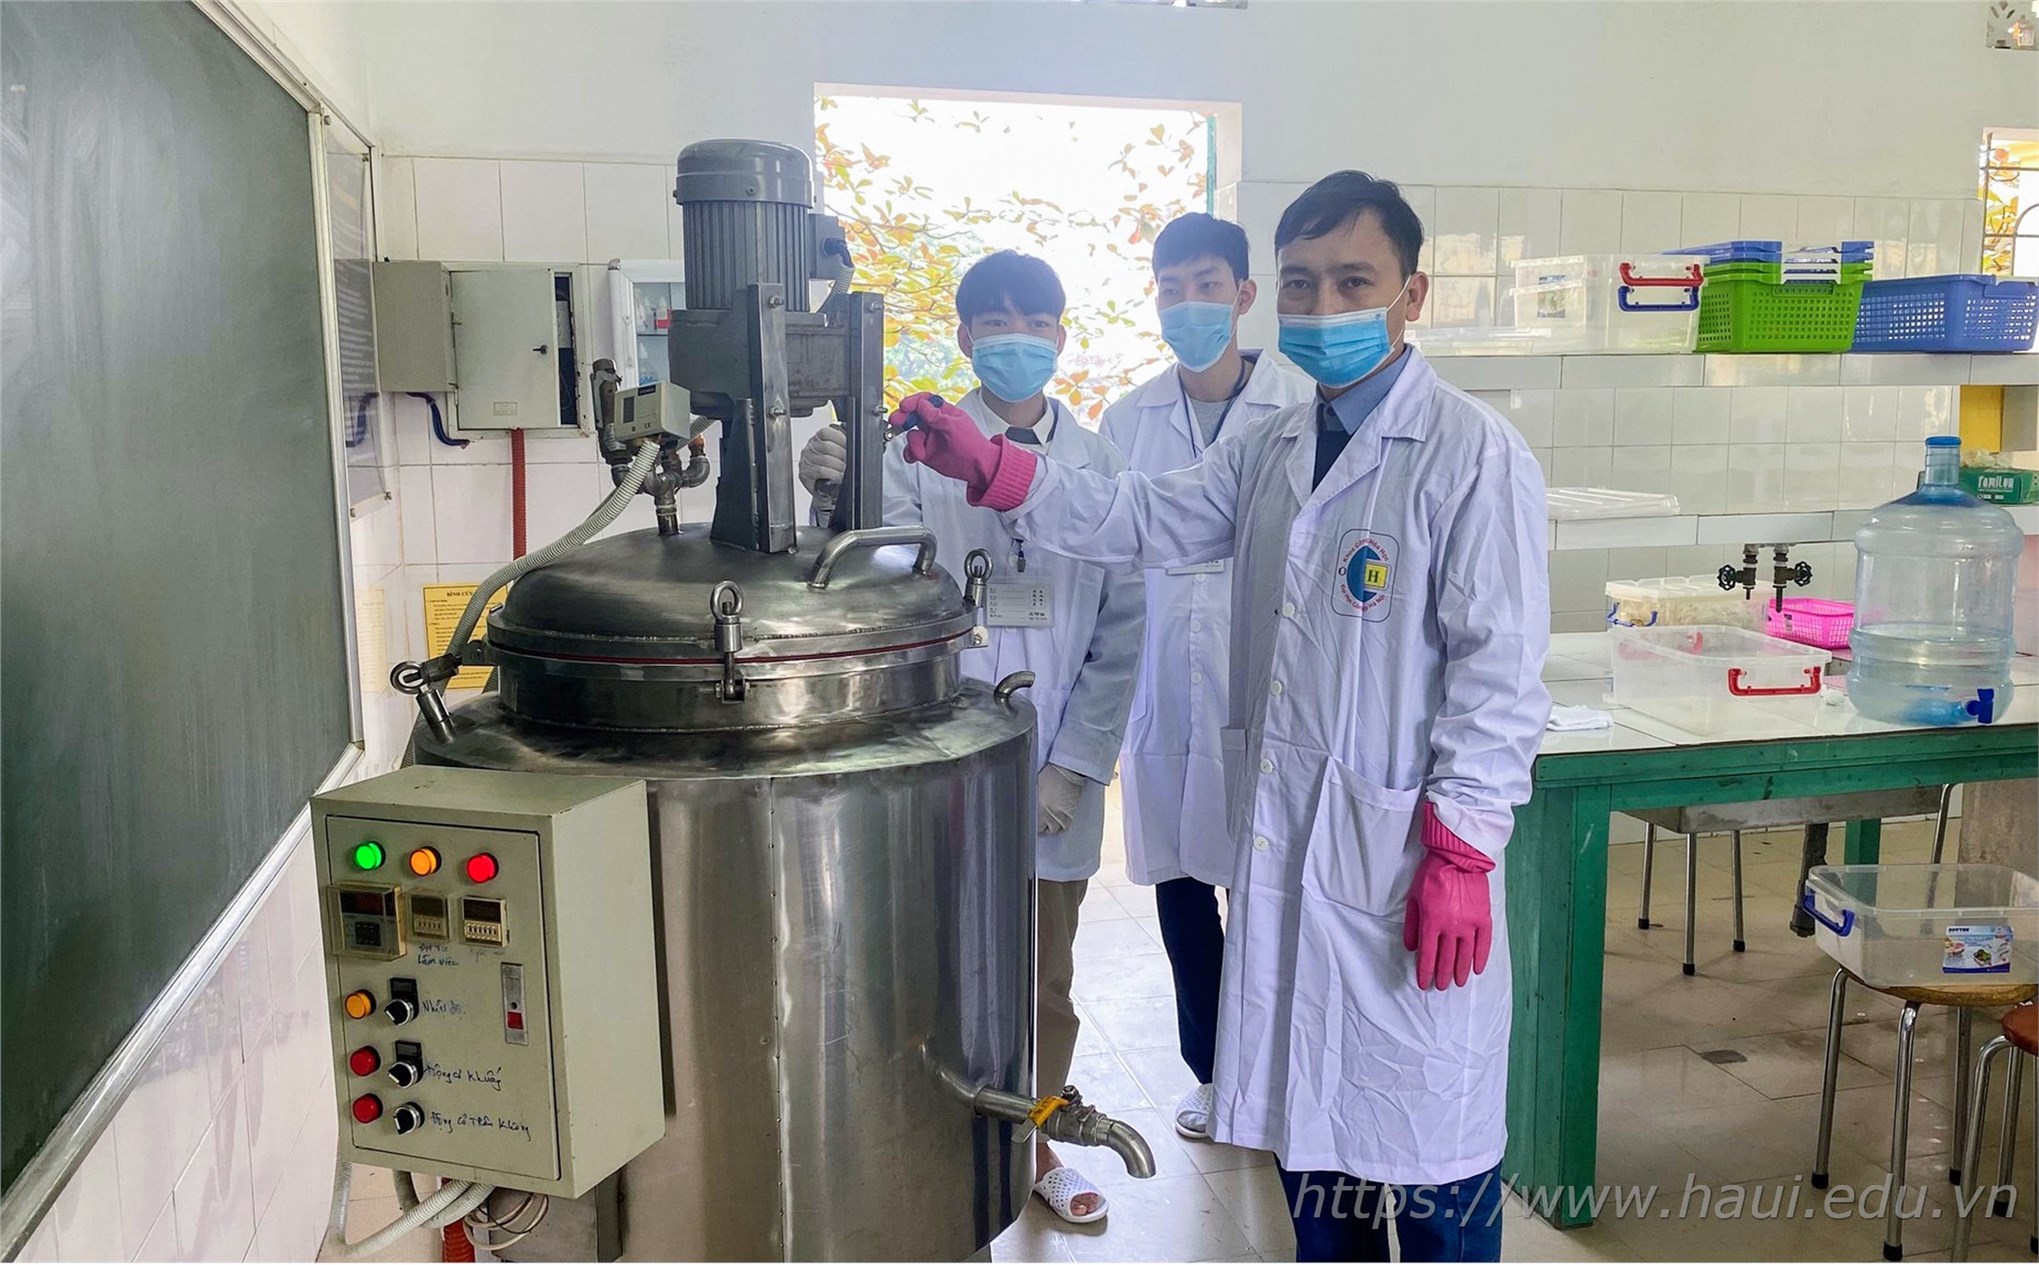 Đại học Công nghiệp Hà Nội sản xuất nước sát khuẩn